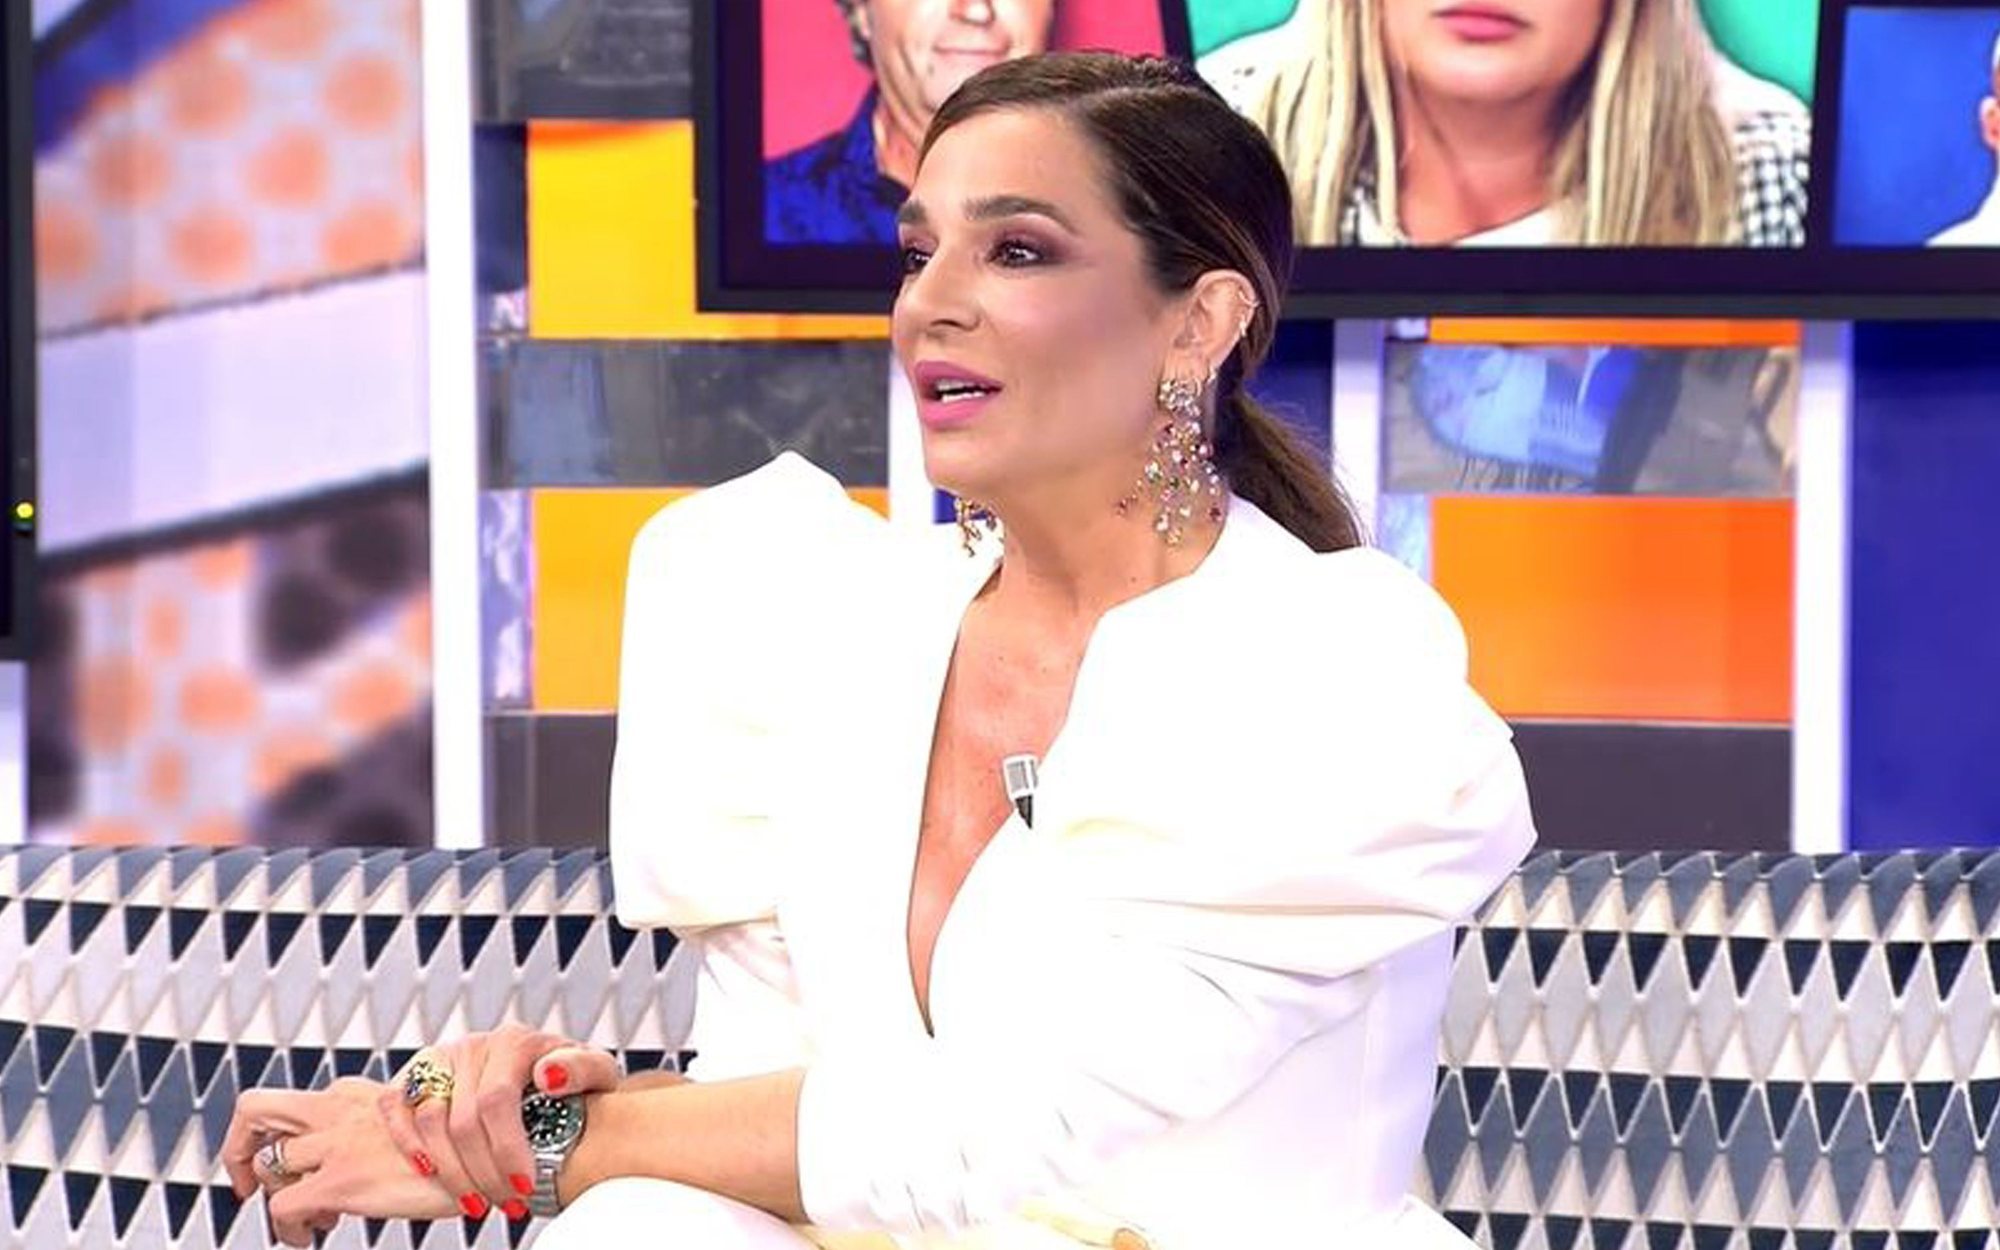 Raquel Bollo carga contra Telecinco: "El maltrato es igual para todas, y aquí se siguió trayendo a mi verdugo"